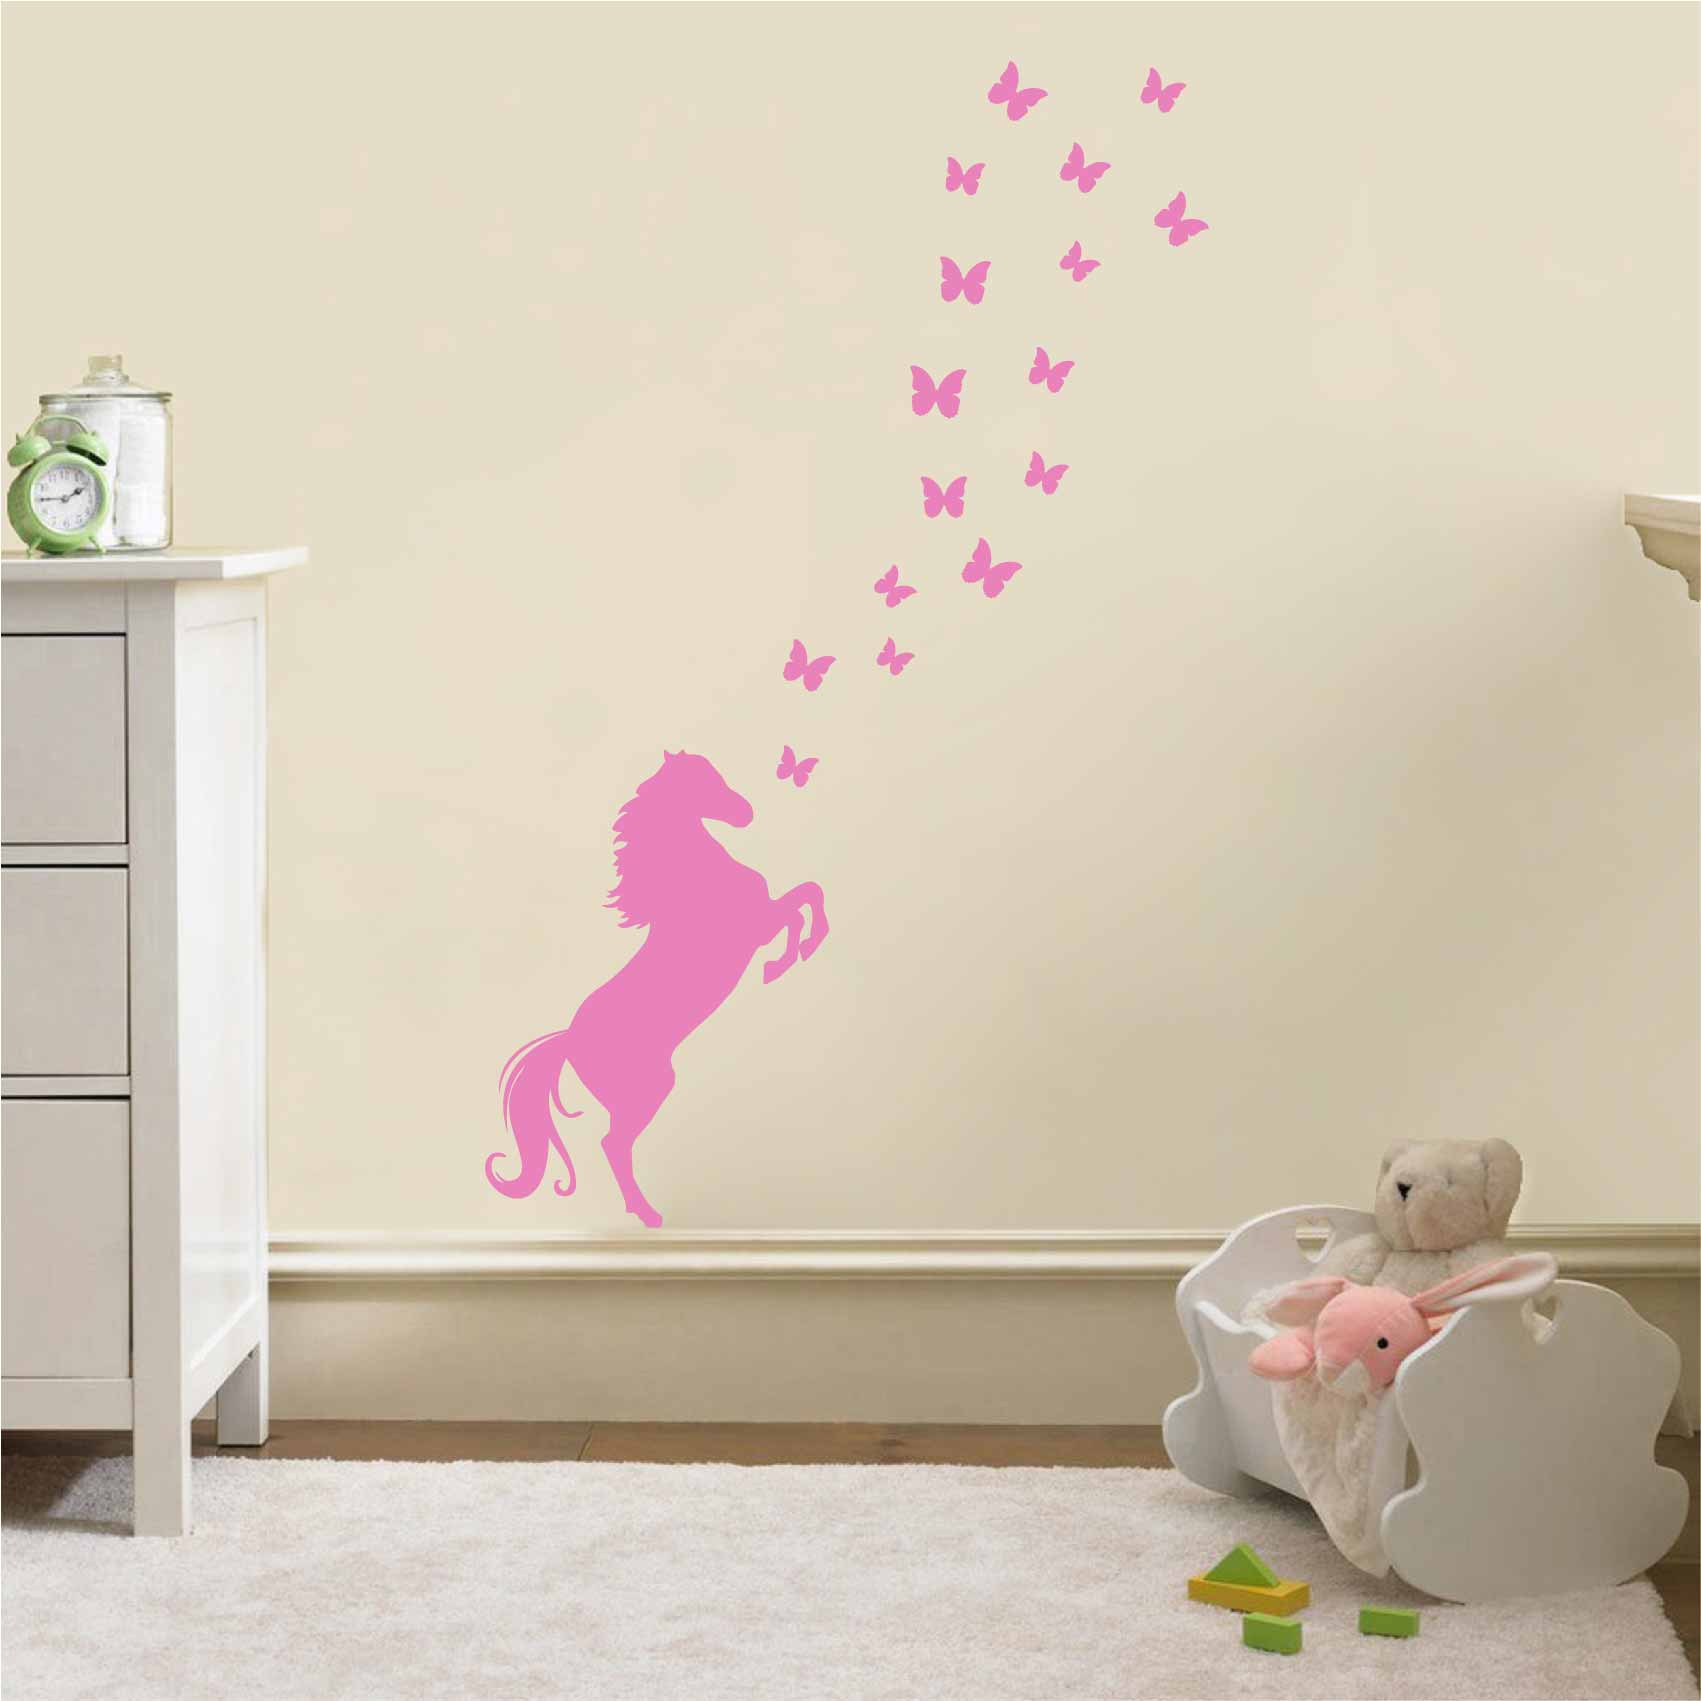 stickers-cheval-papillons-ref13cheval-autocollant-muraux-animaux-chevaux-papillon-sticker-mural-deco-salon-chambre-enfant